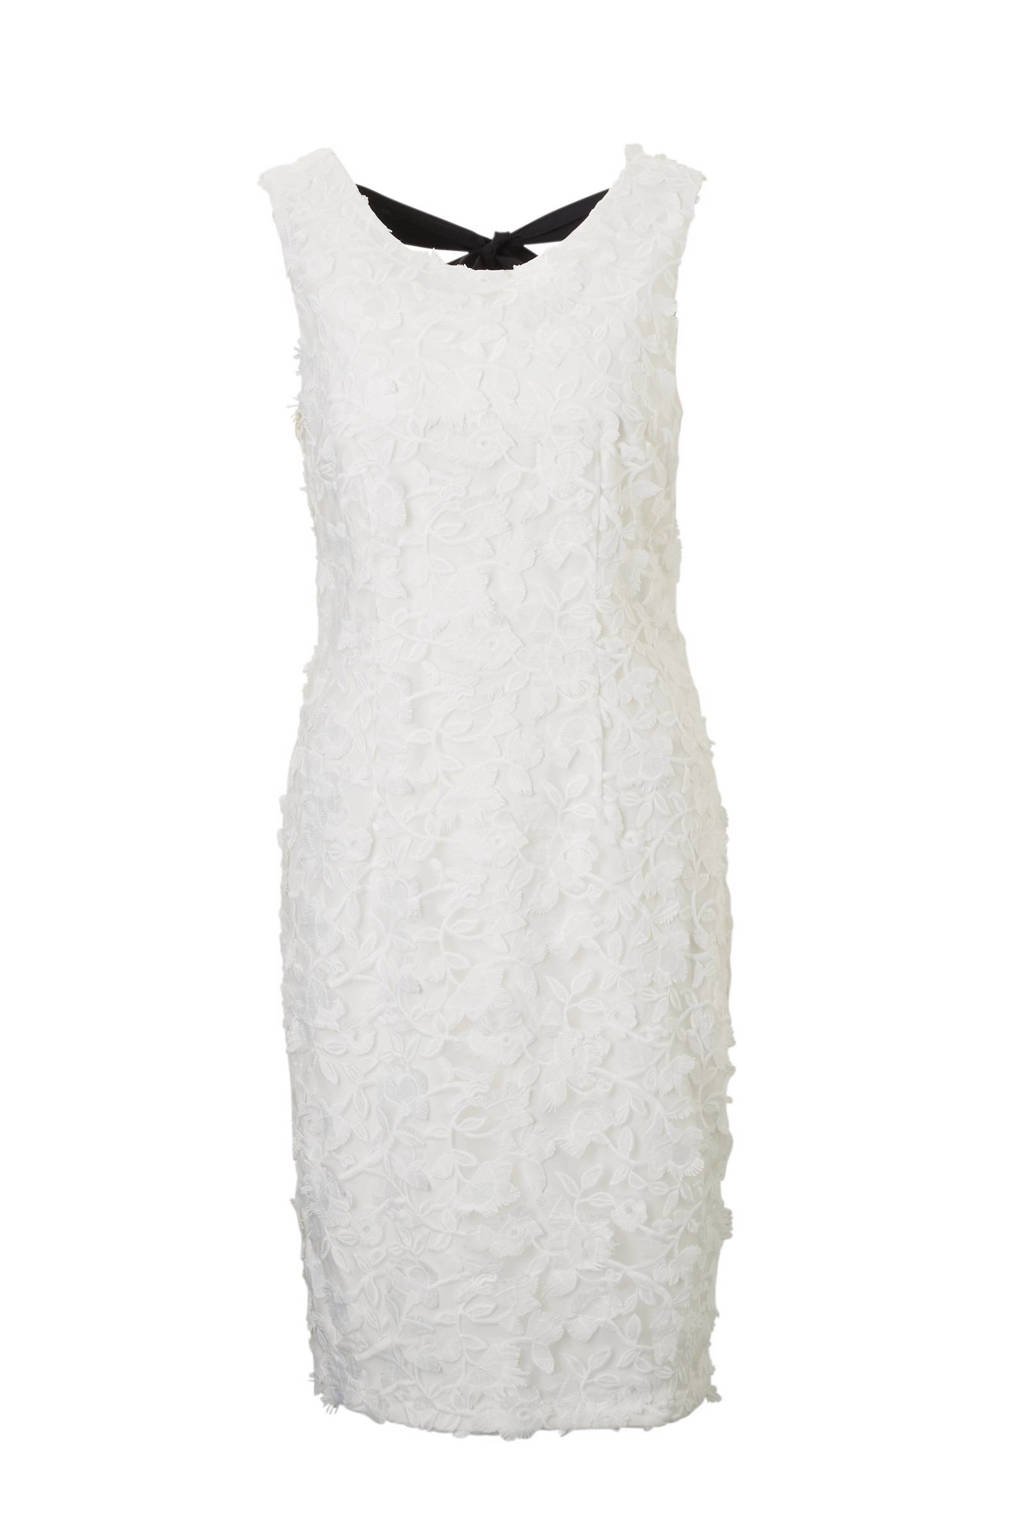 Ongekend C&A Yessica kanten jurk gebroken wit | wehkamp GX-88